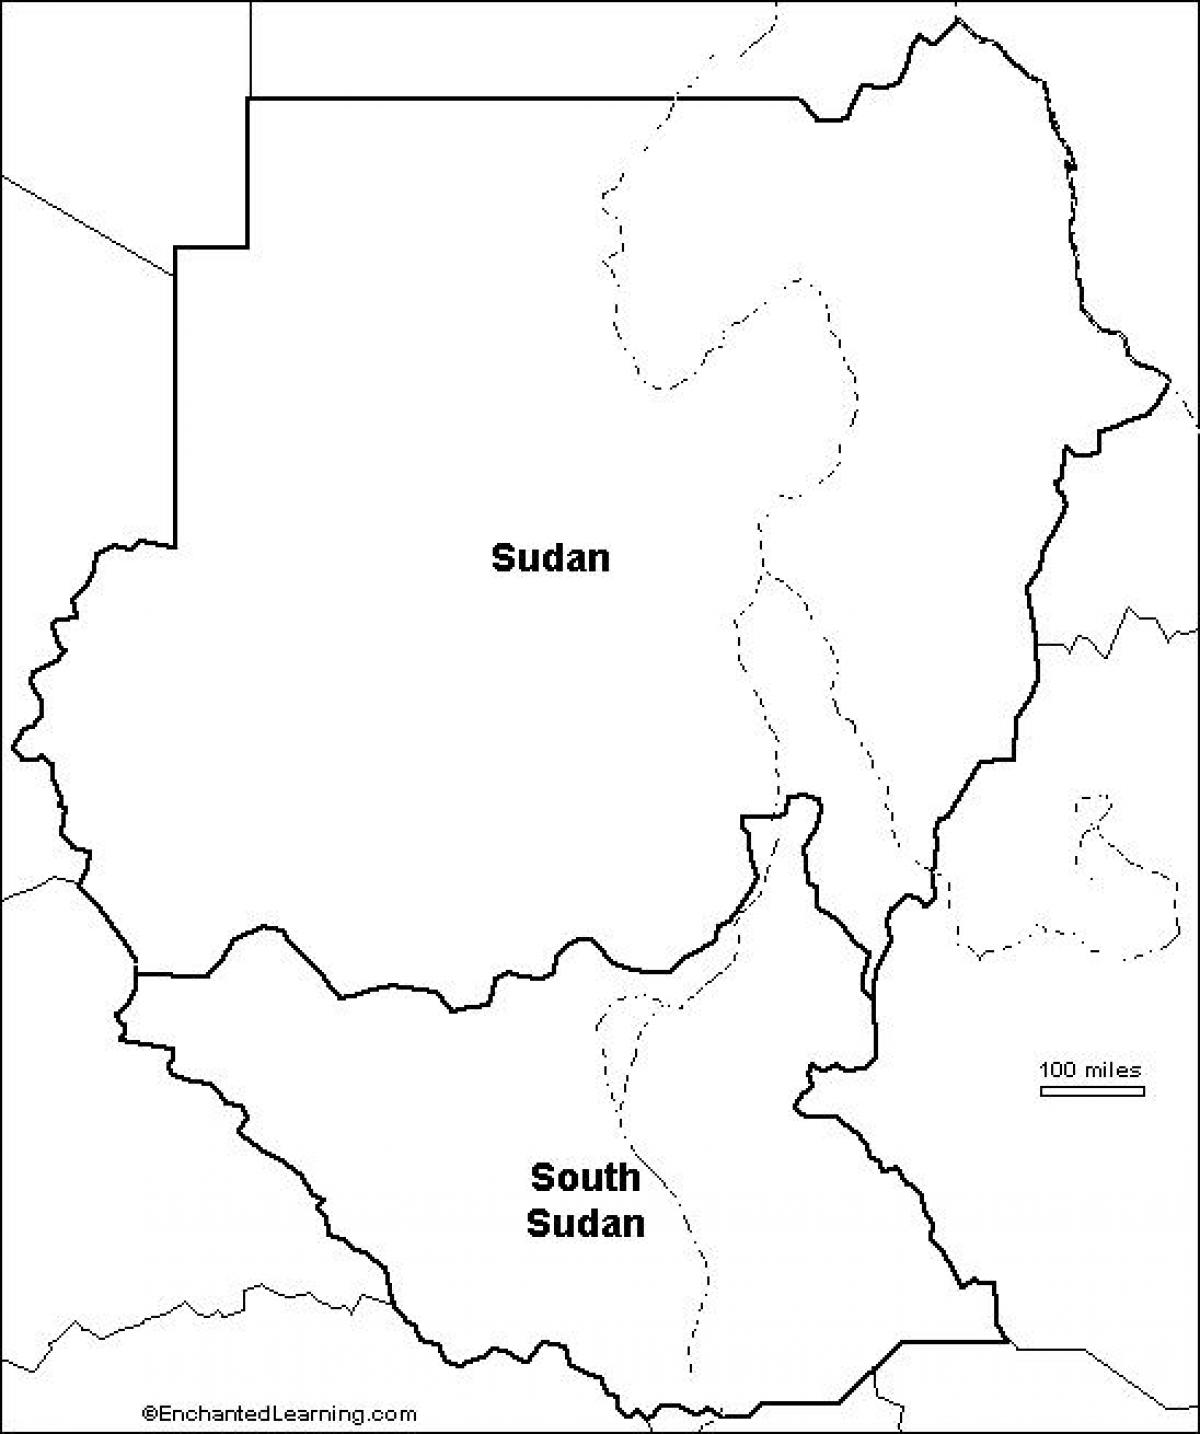 Mapa de Sudan en blanc